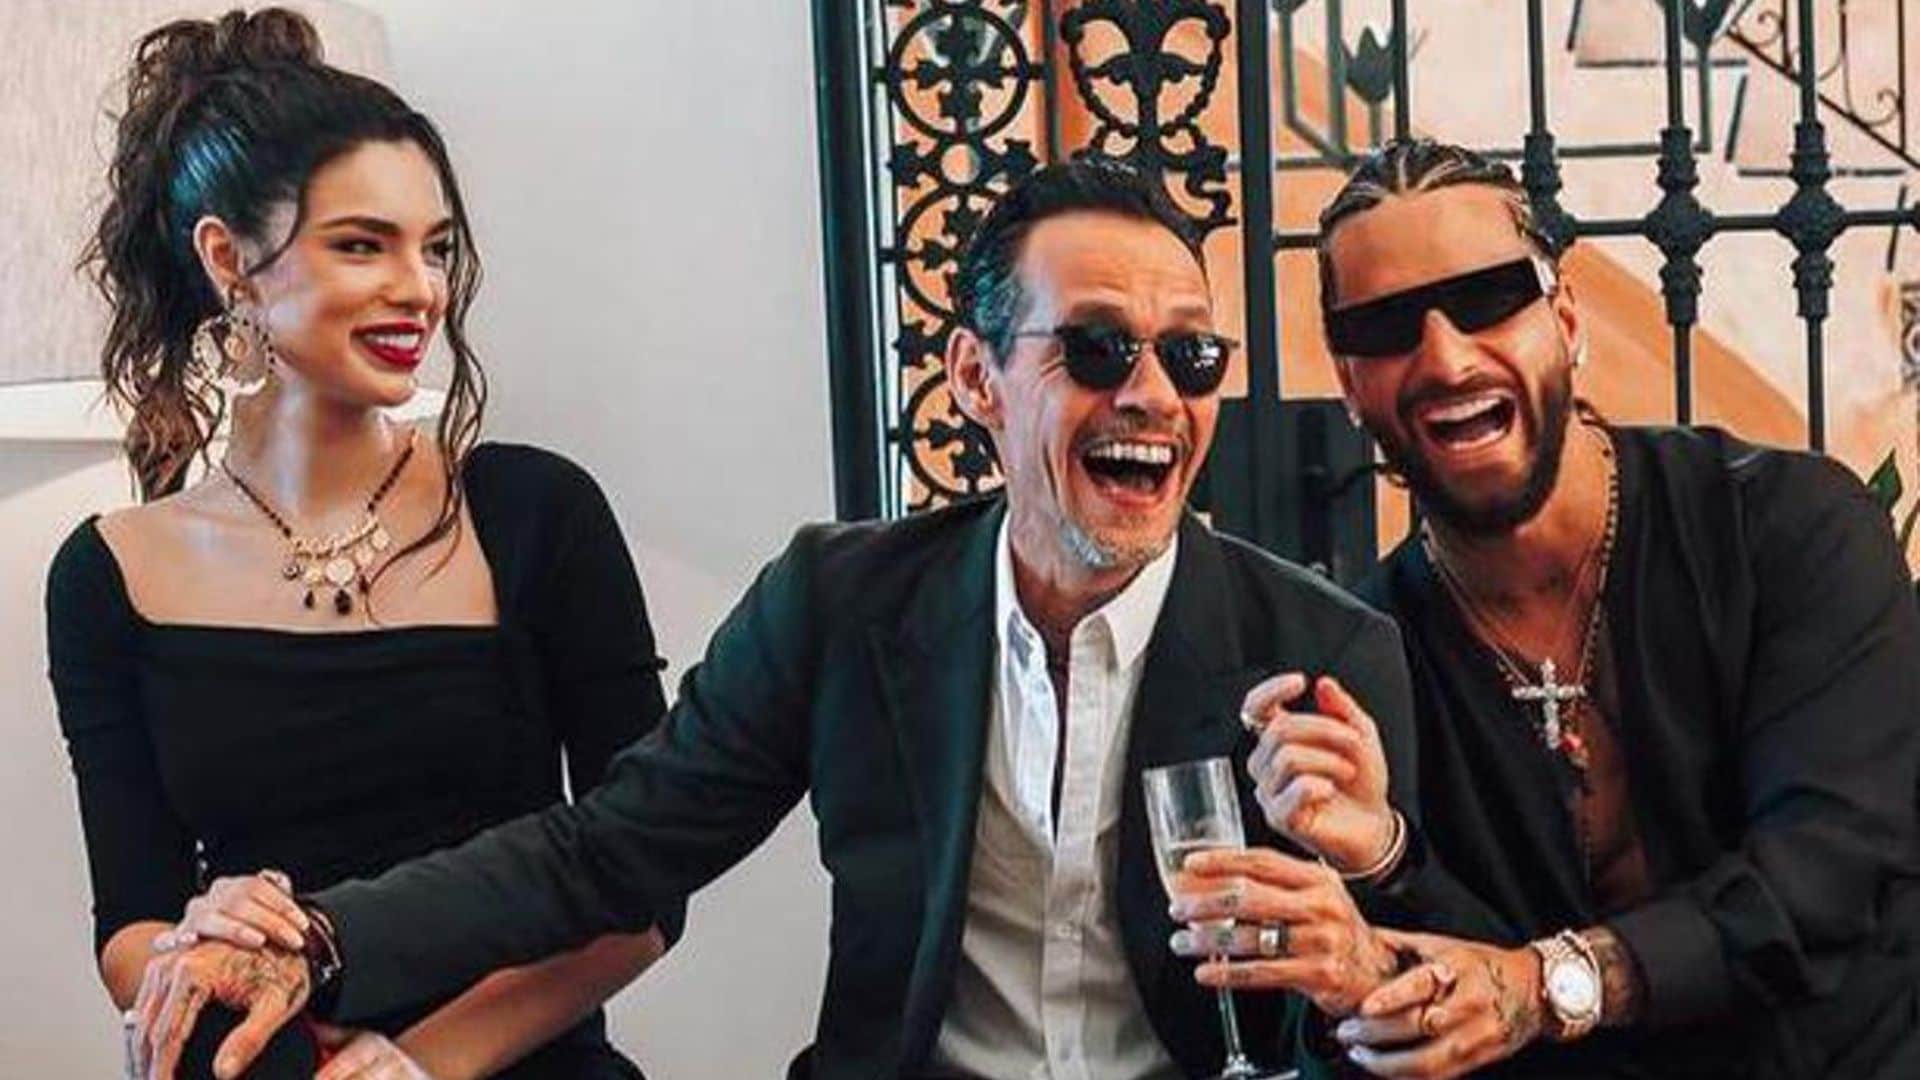 Maluma celebrates his 29th birthday alongside David Beckham, Marc Anthony, and Nadia Ferreira